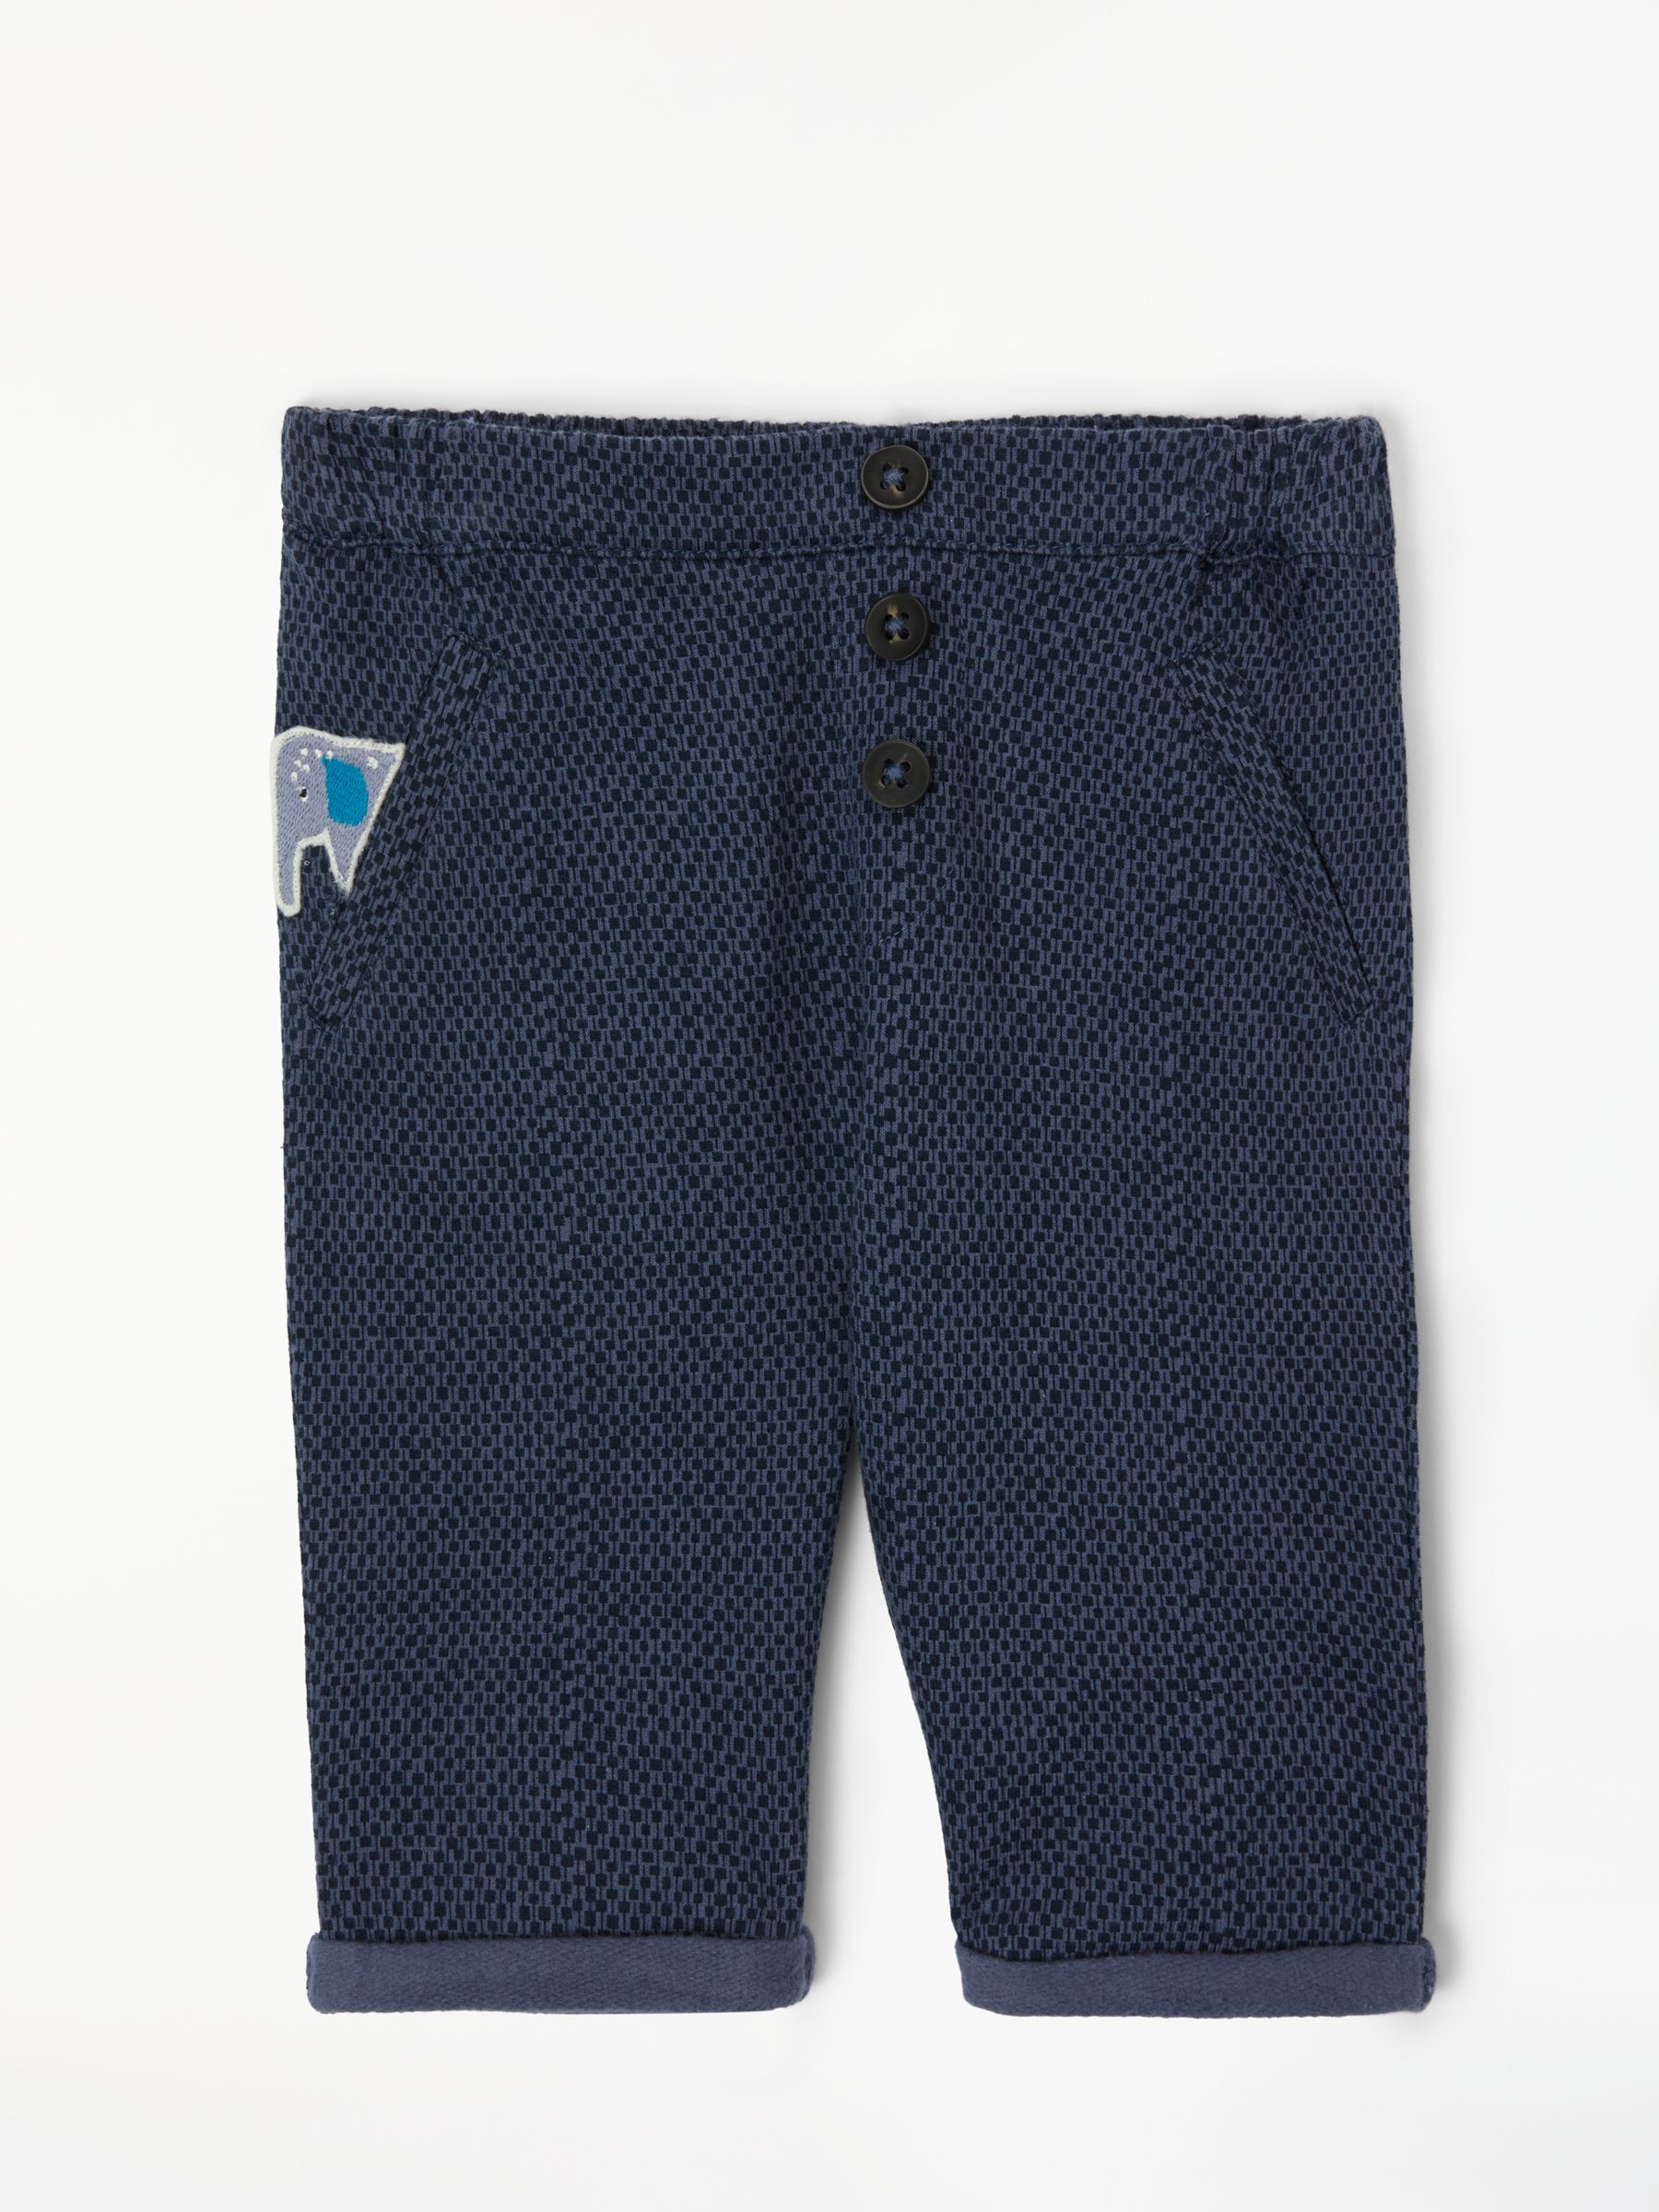 John Lewis & Partners Baby Textured Look Printed Trousers, Denim Blue